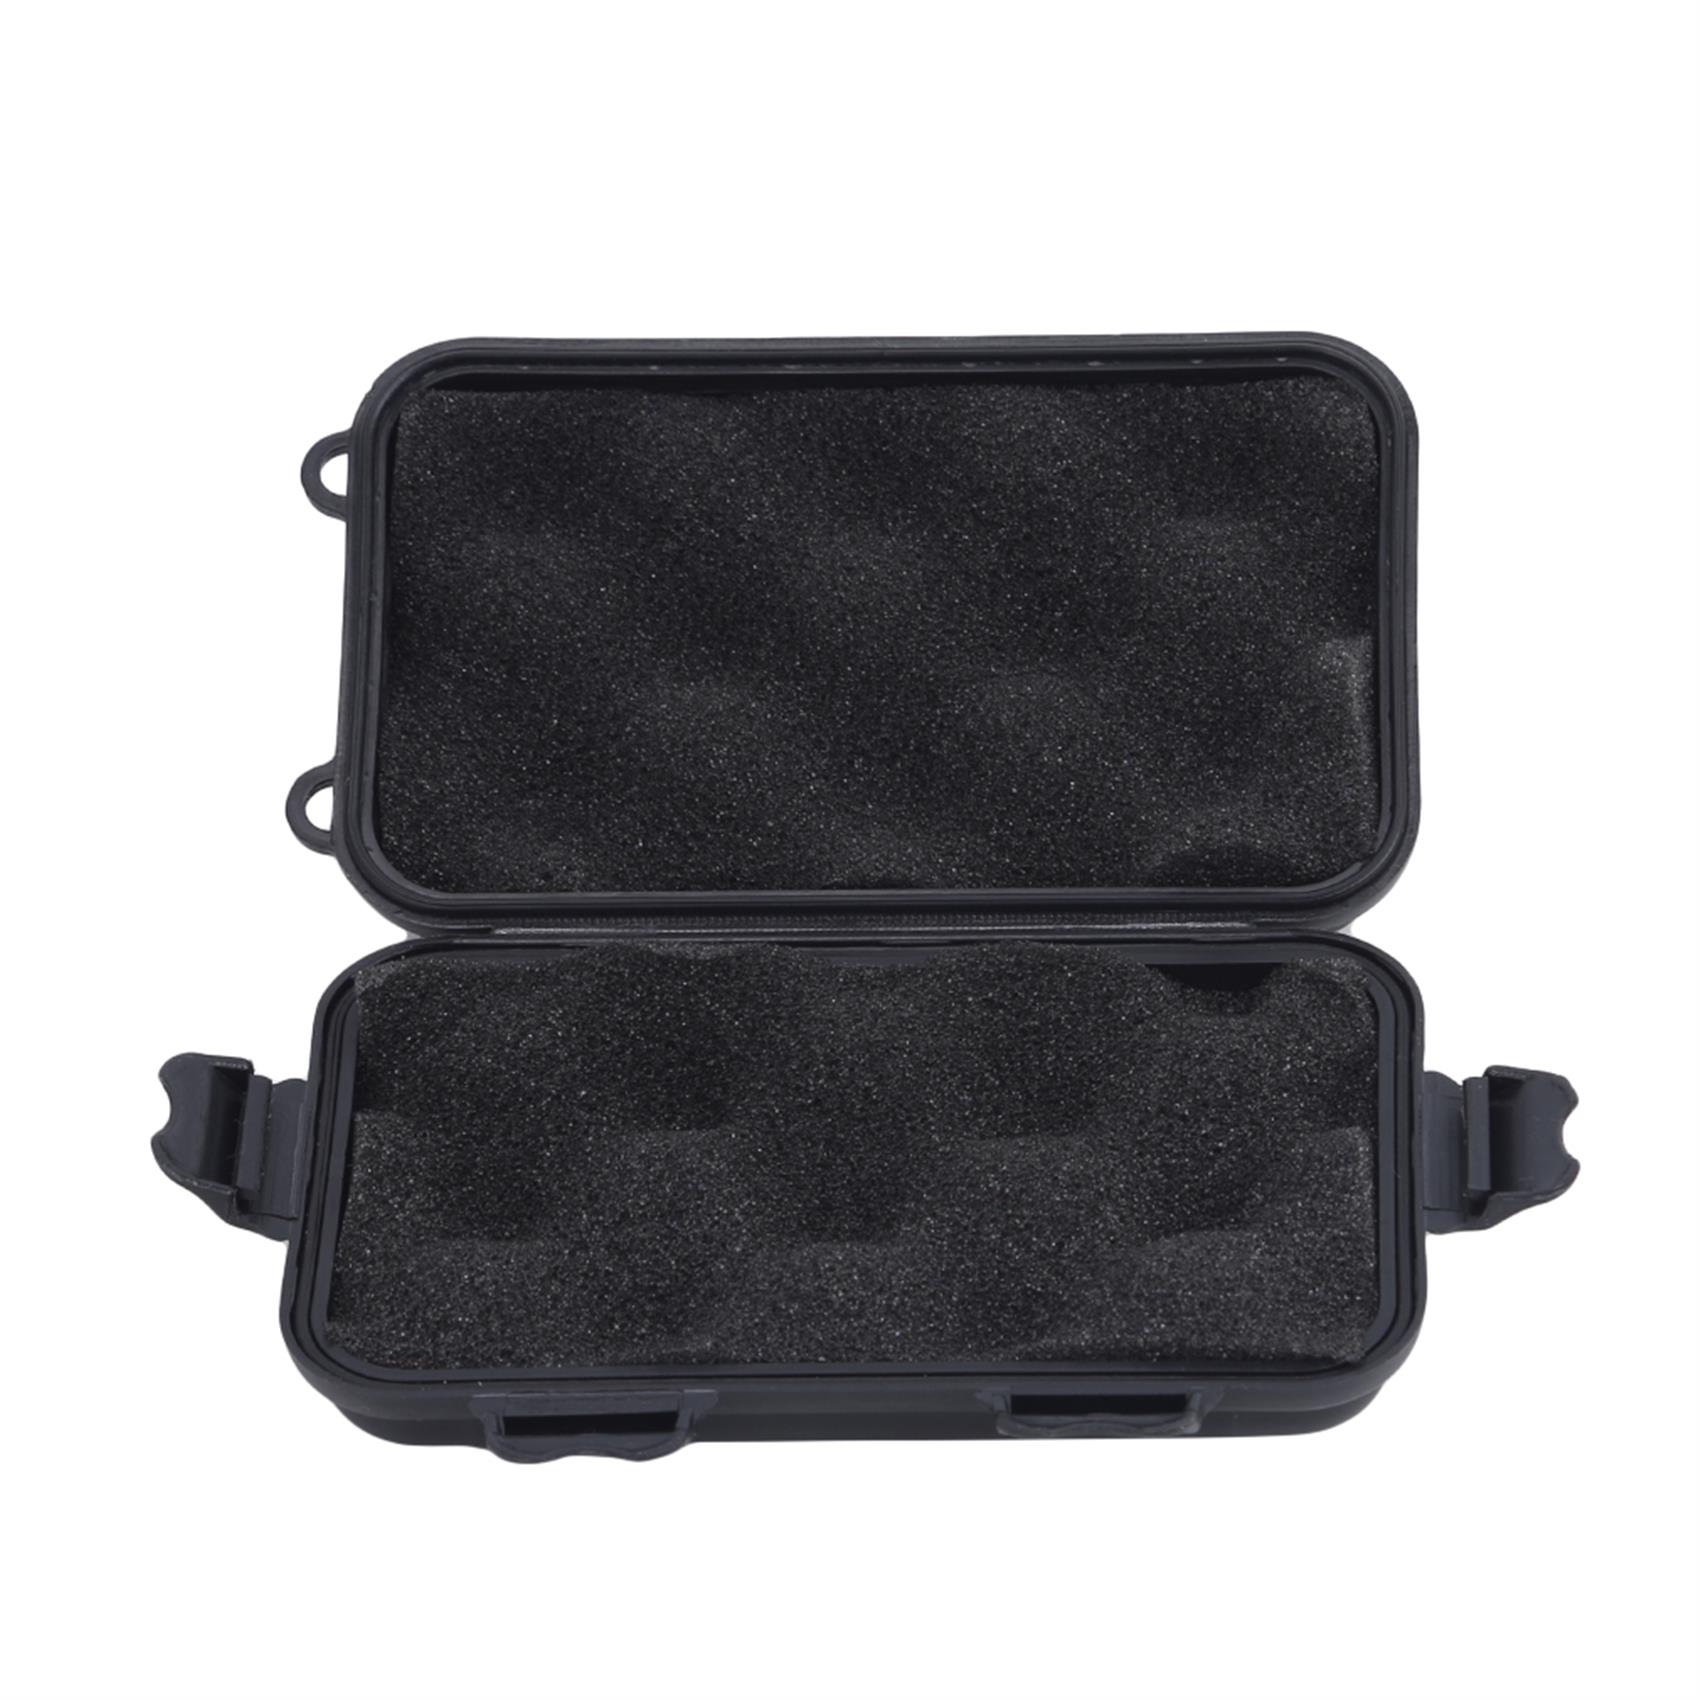 Multipurpose Outdoor Shockproof Storage Case Anti Pressure Weather  Resistant Dustproof Waterproof Dry Box for Phones Gadget Travel